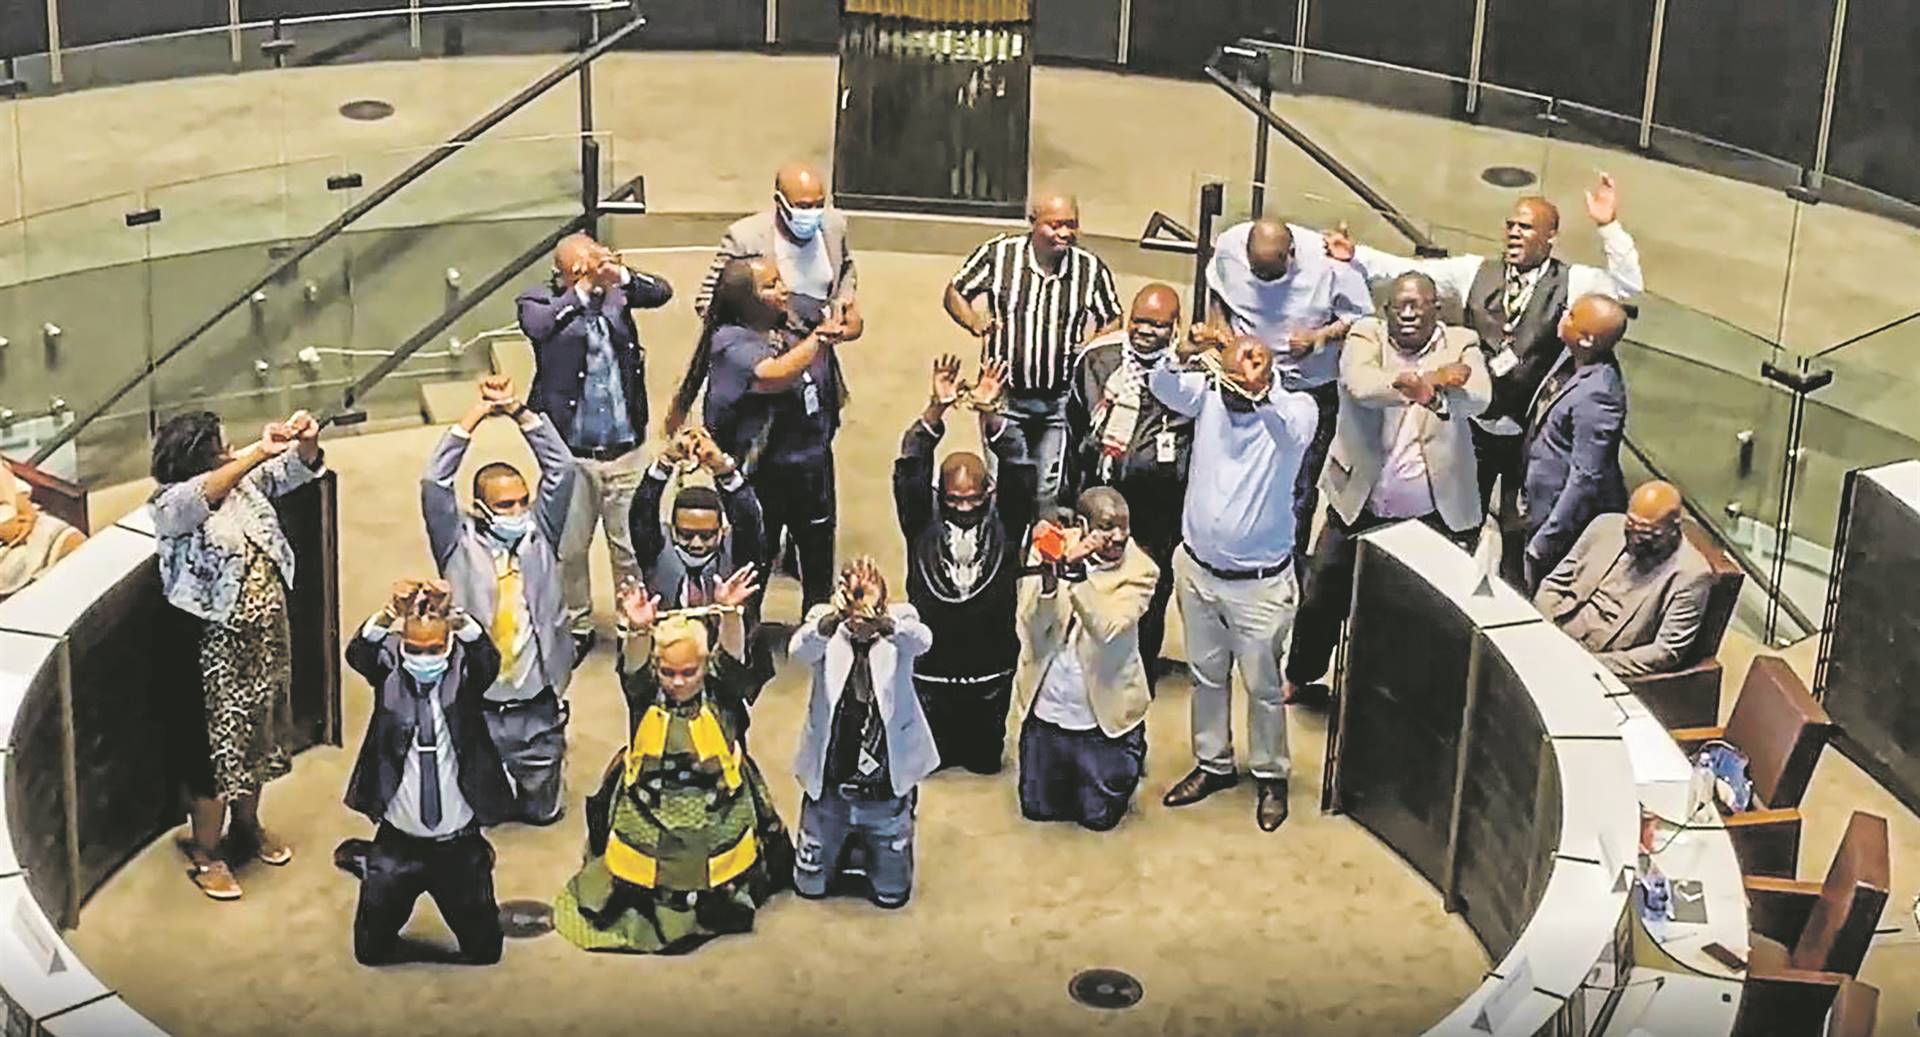 Opposisiepartylede Dinsdag met hul hande vasgeketting uit protes teen die Johannesburgse speaker, Vasco da Gama. Foto: Twitter